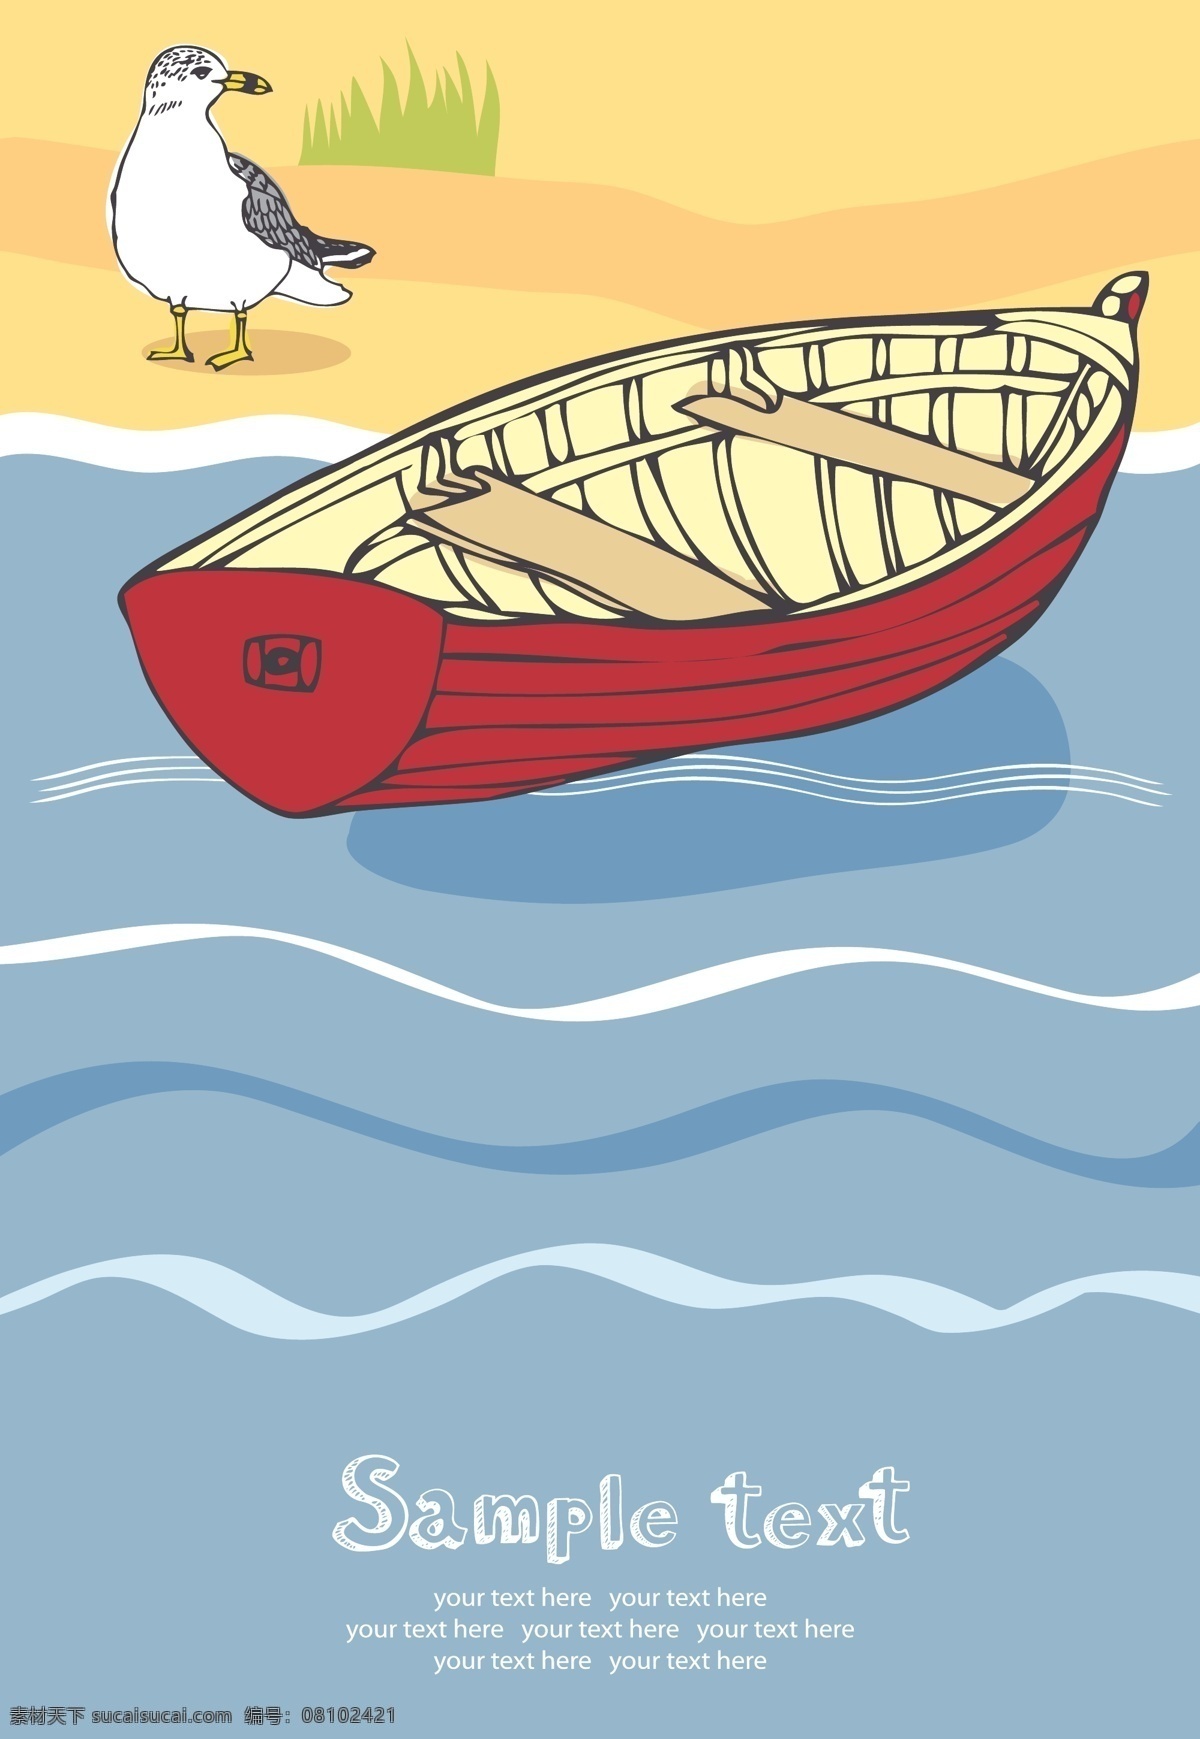 贝壳 插画风格 灯塔 度假 帆船 海鸥 海上 海滩 海洋 夏日 休闲 假期 矢量 眺望台 木船 救生圈 矢量素材 其他矢量